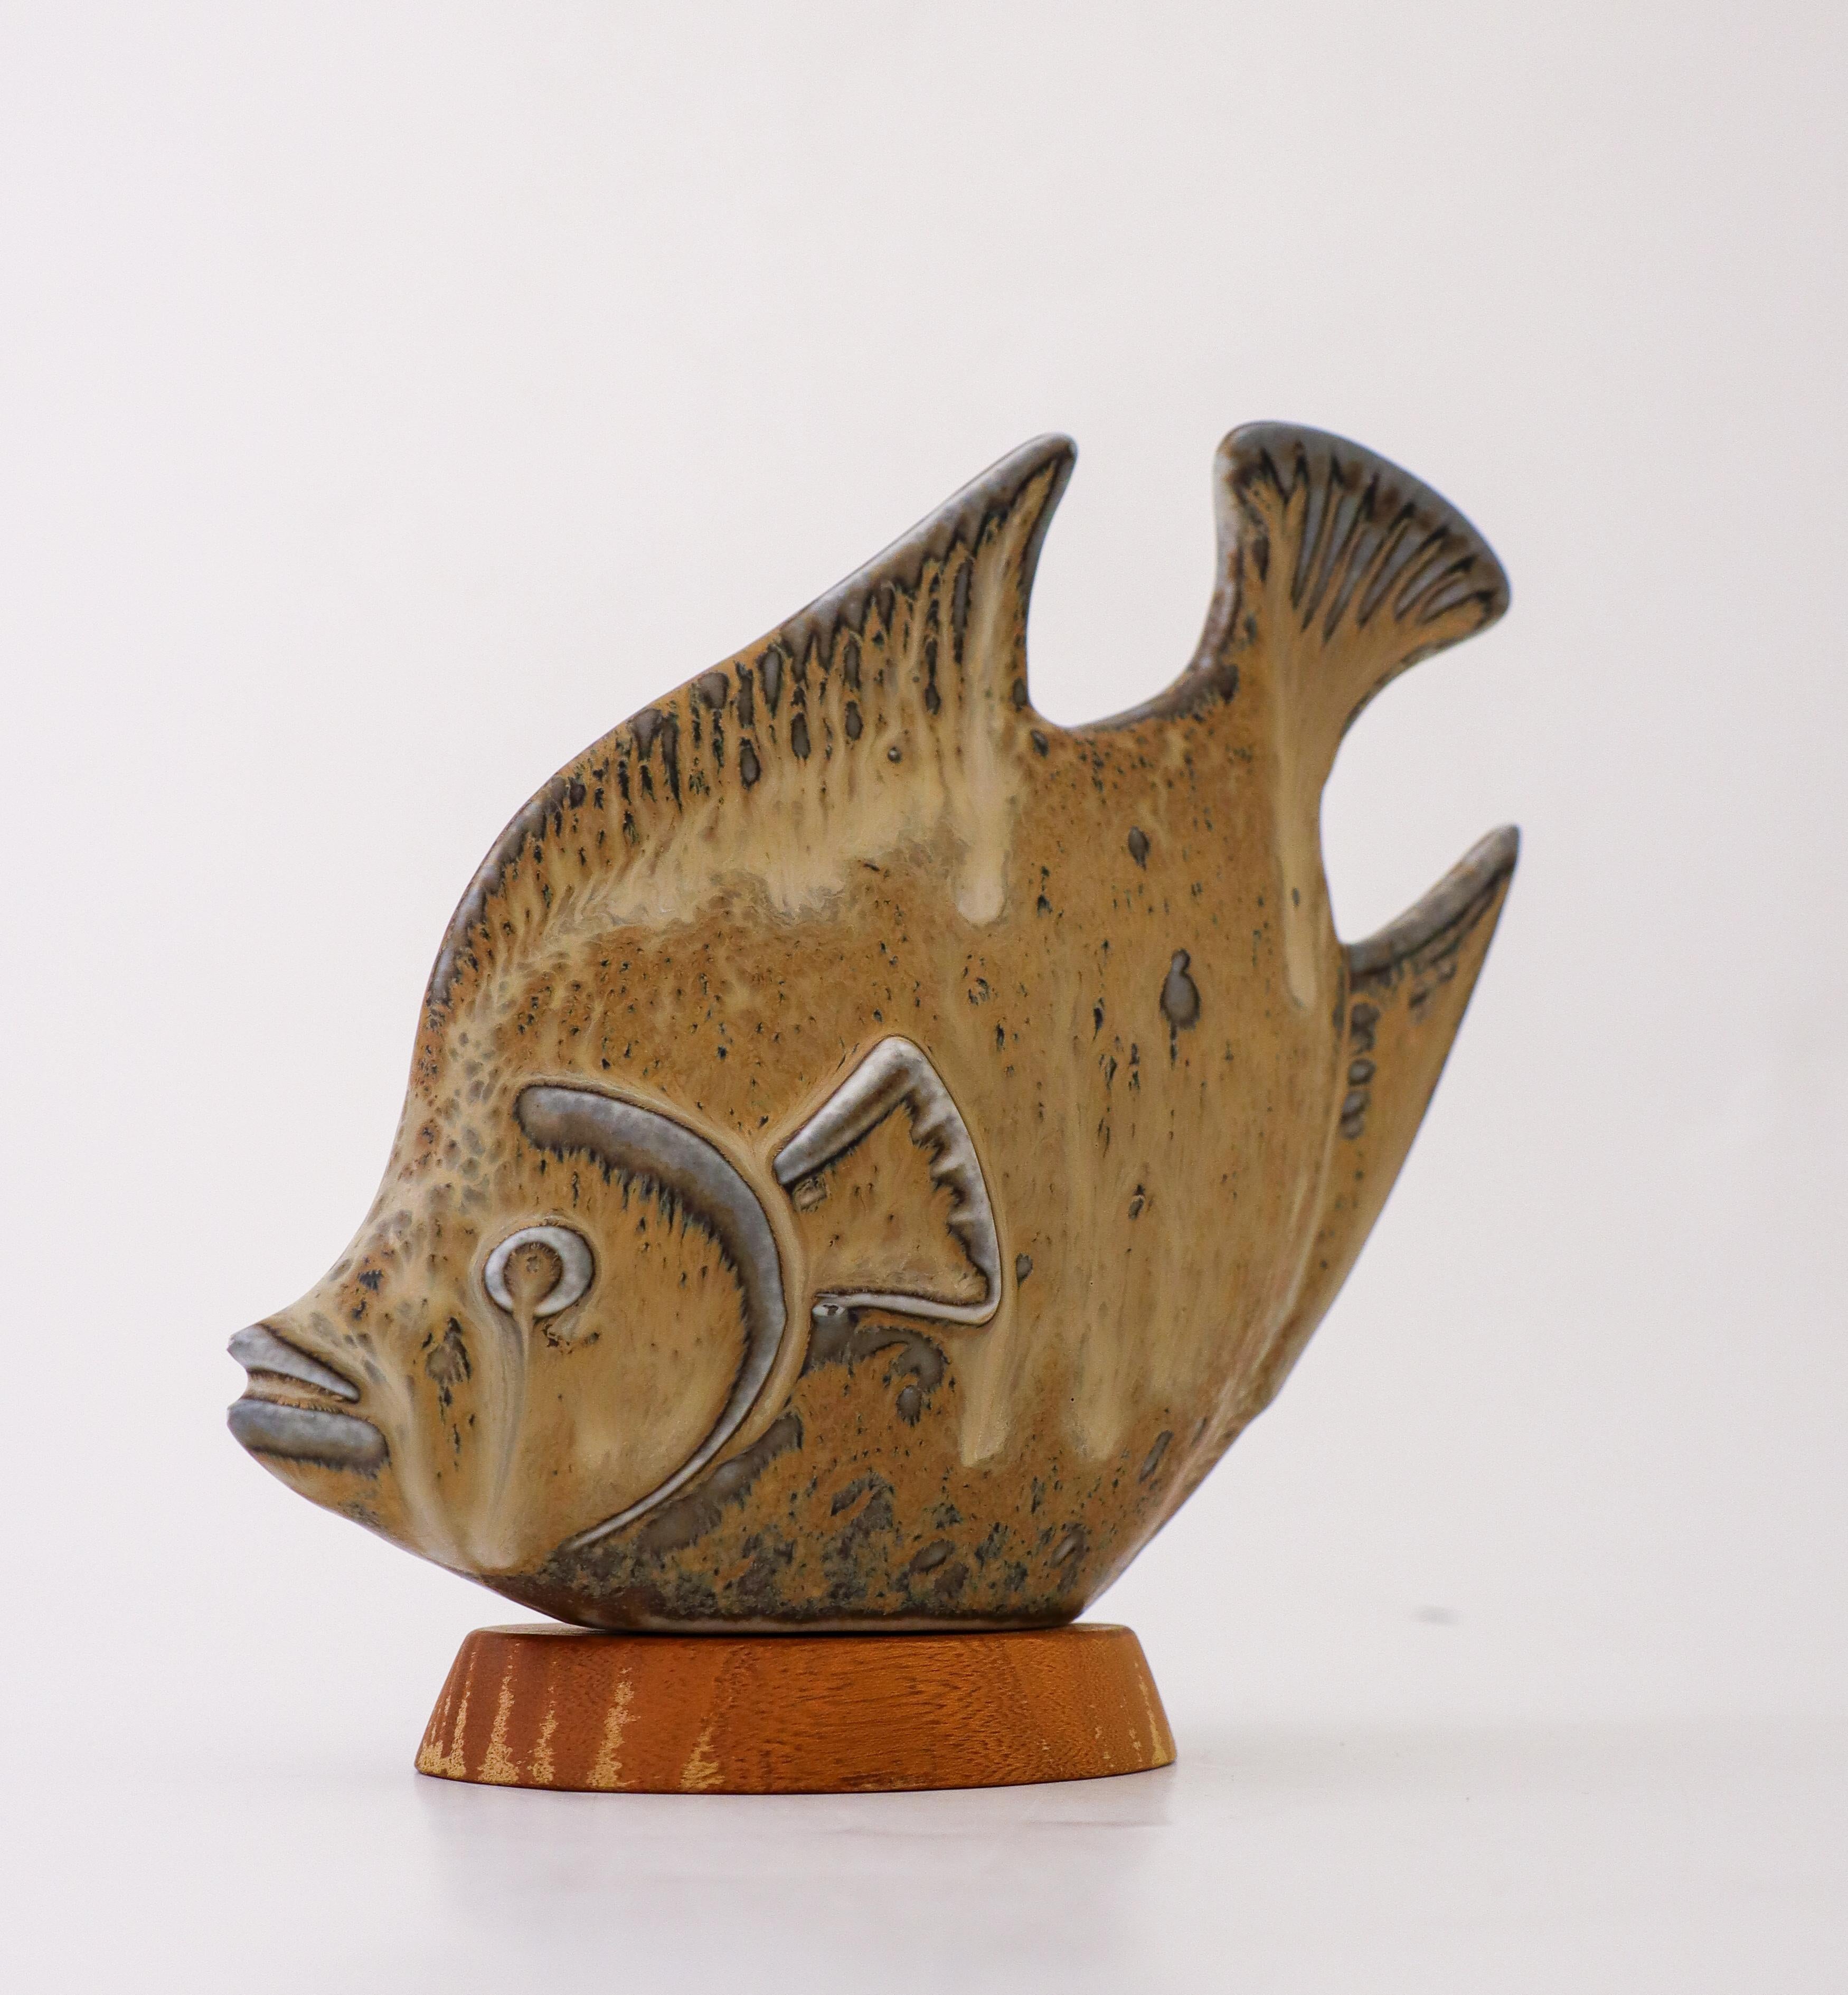 Eine schöne Fischskulptur aus Keramik, entworfen von Gunnar Nylund in Rörstrand. Sie ist 16,5 cm (6,6